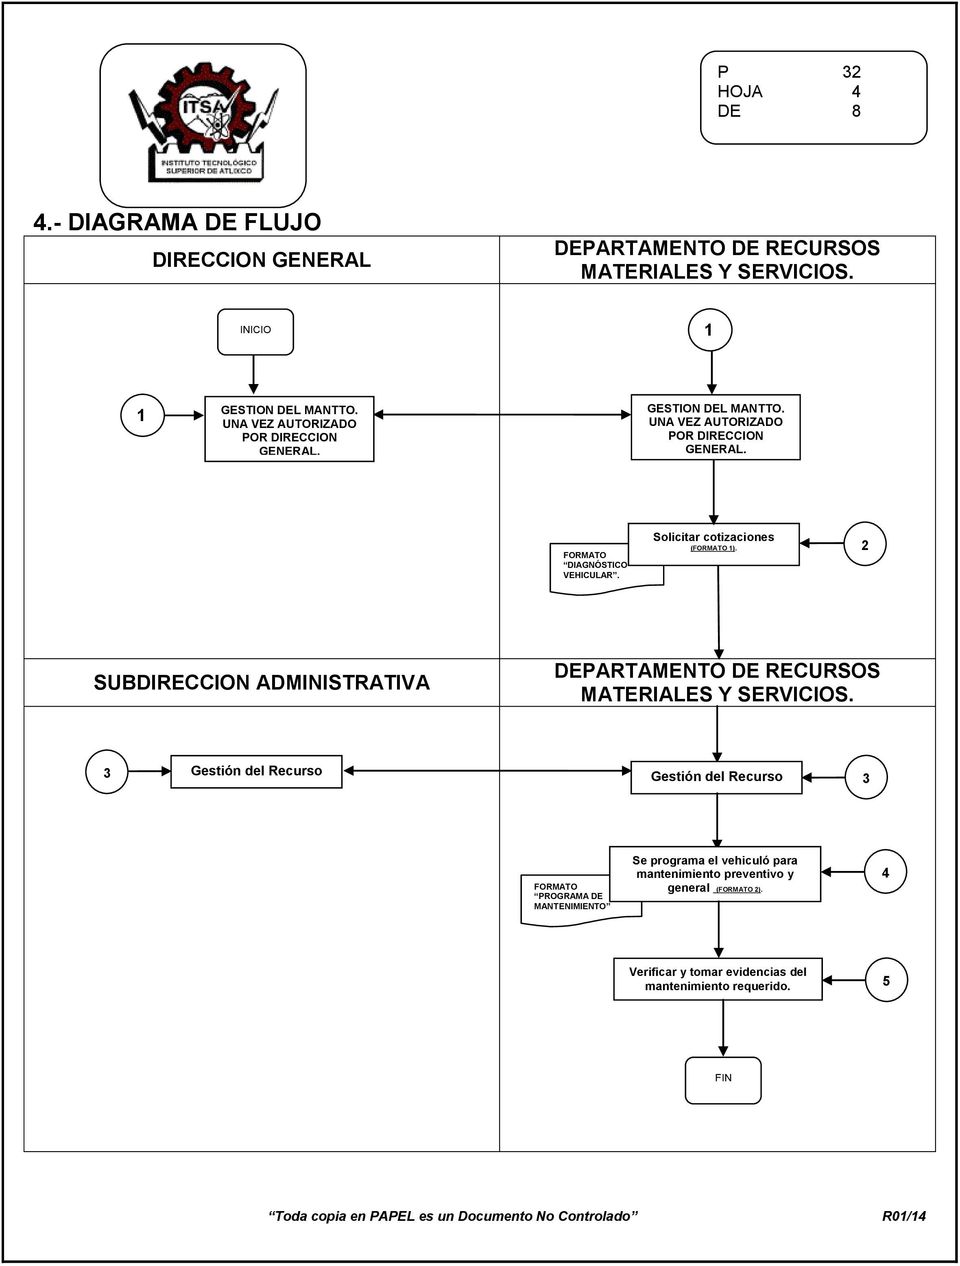 Solicitar cotizaciones (FORMATO 1). 2 SUBDIRECCION ADMINISTRATIVA DEPARTAMENTO DE RECURSOS MATERIALES Y SERVICIOS.